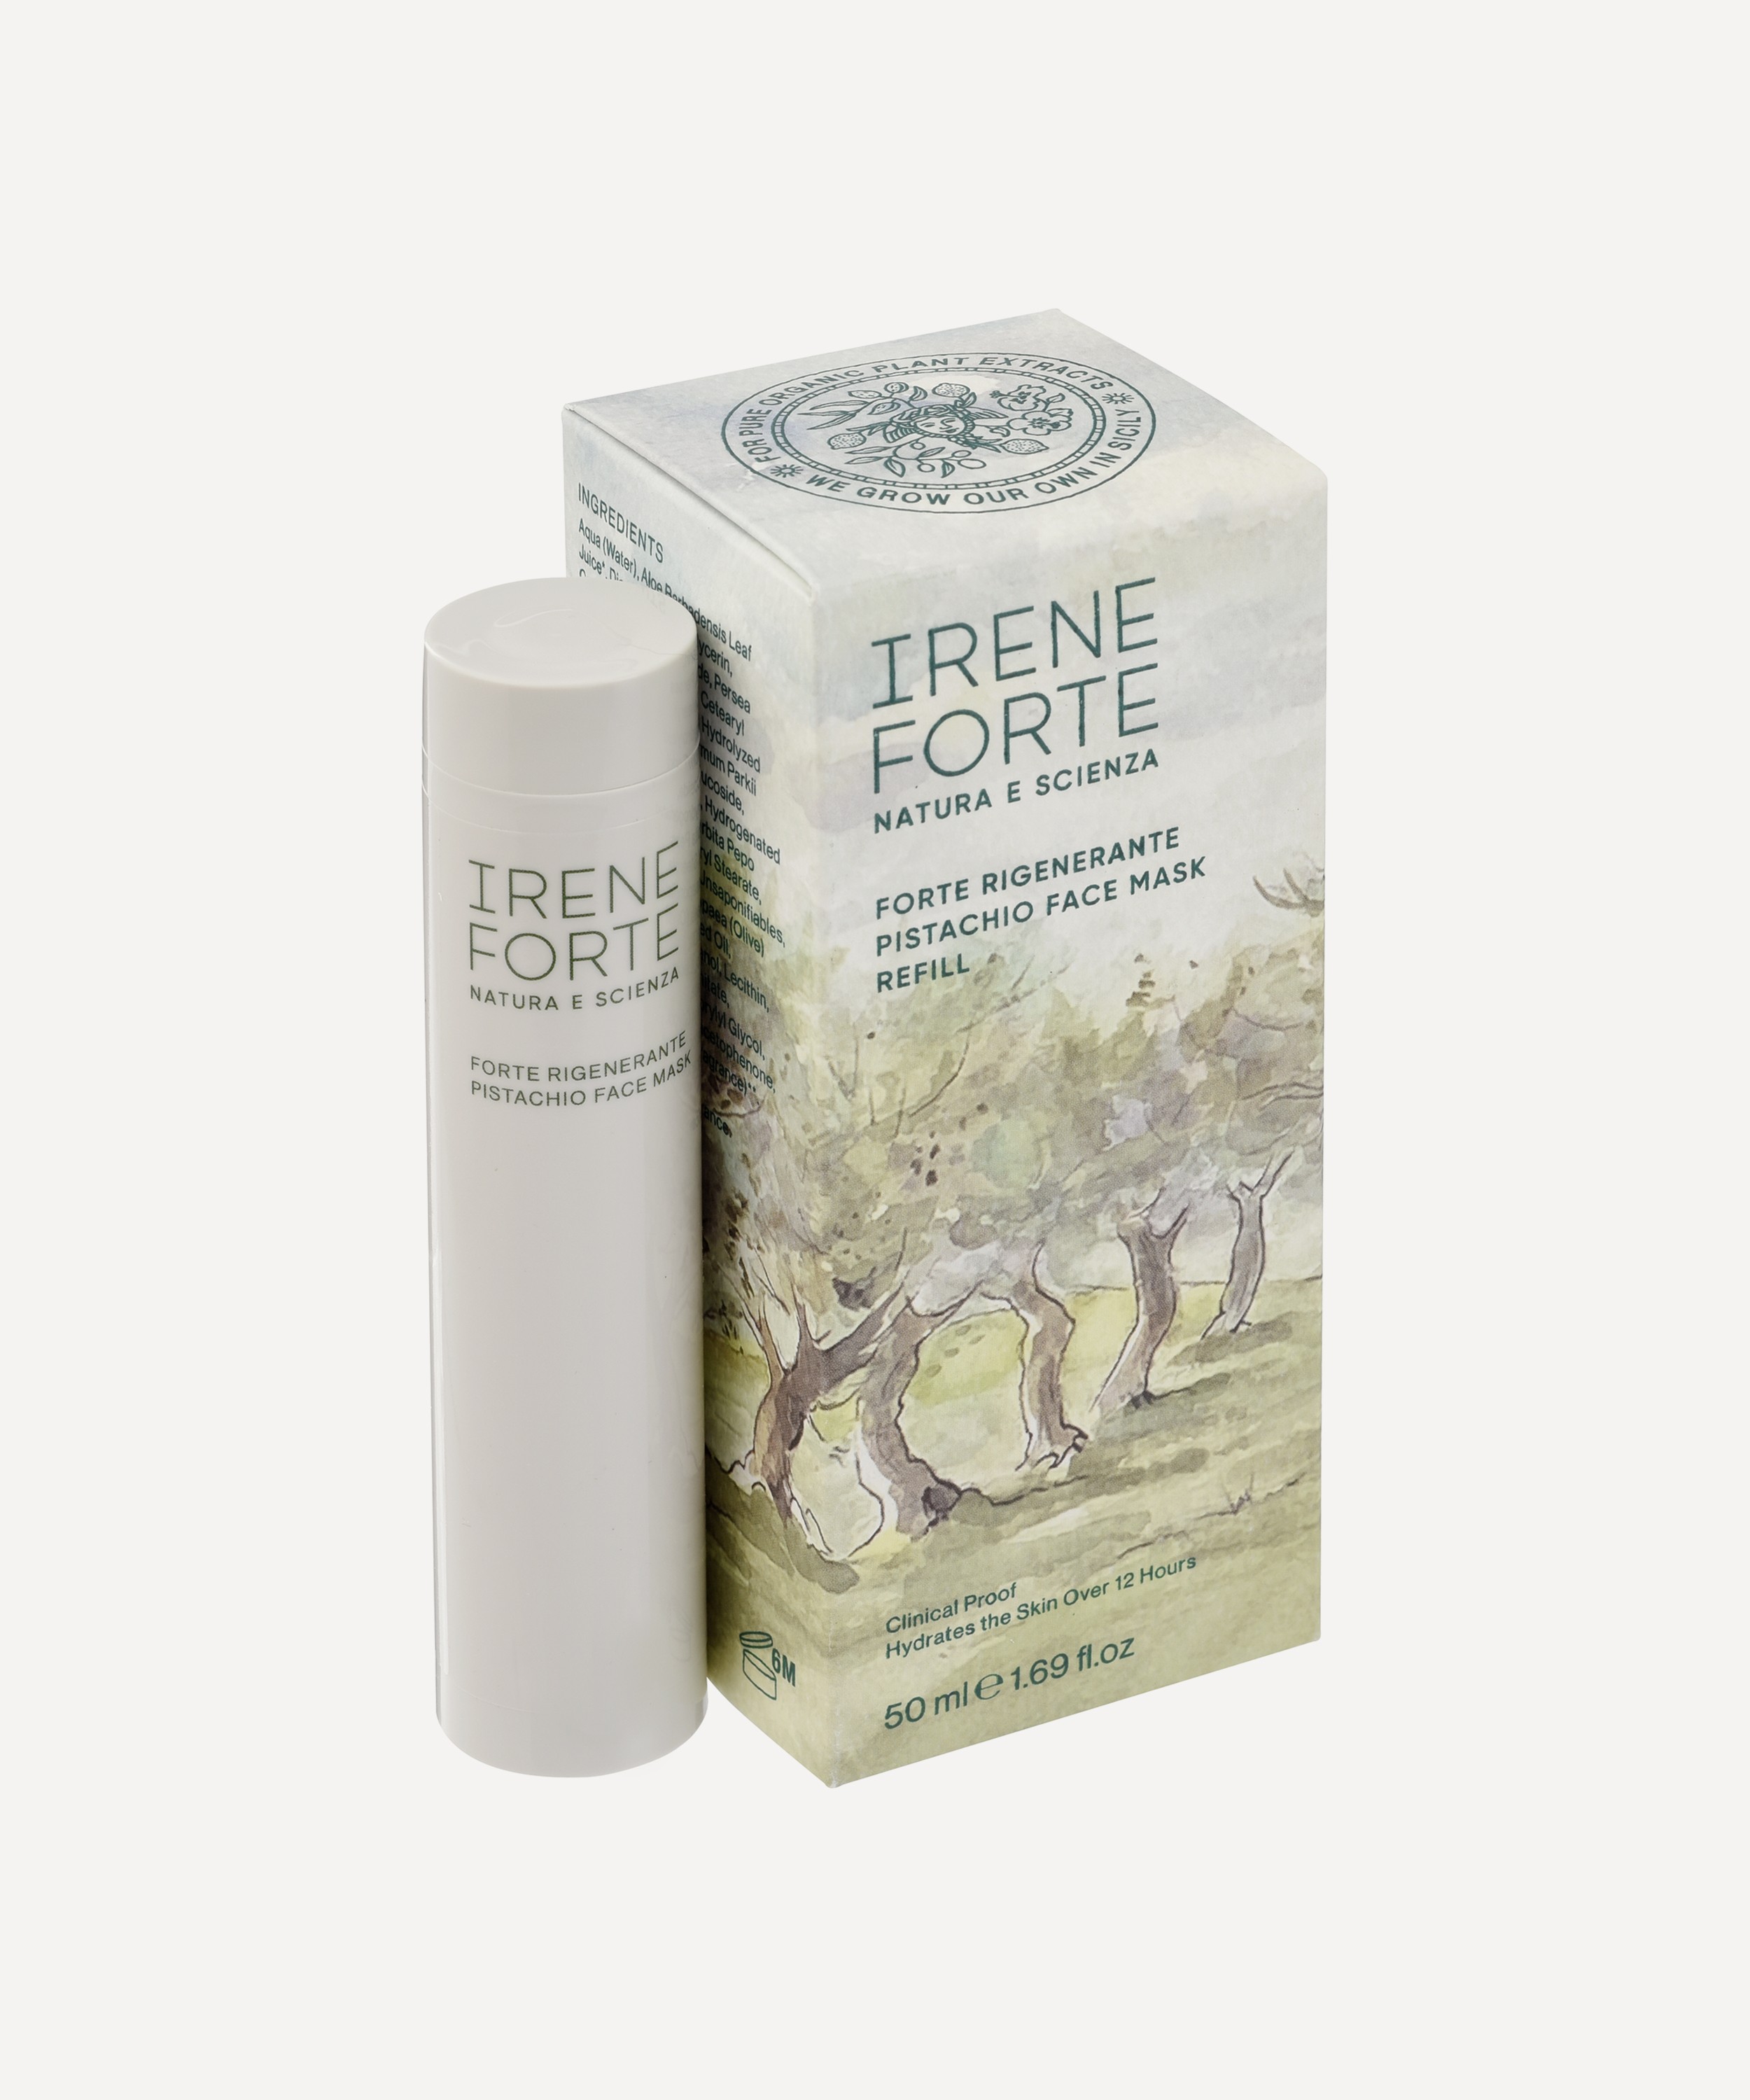 Irene Forte - Pistachio Face Mask Refill 50ml